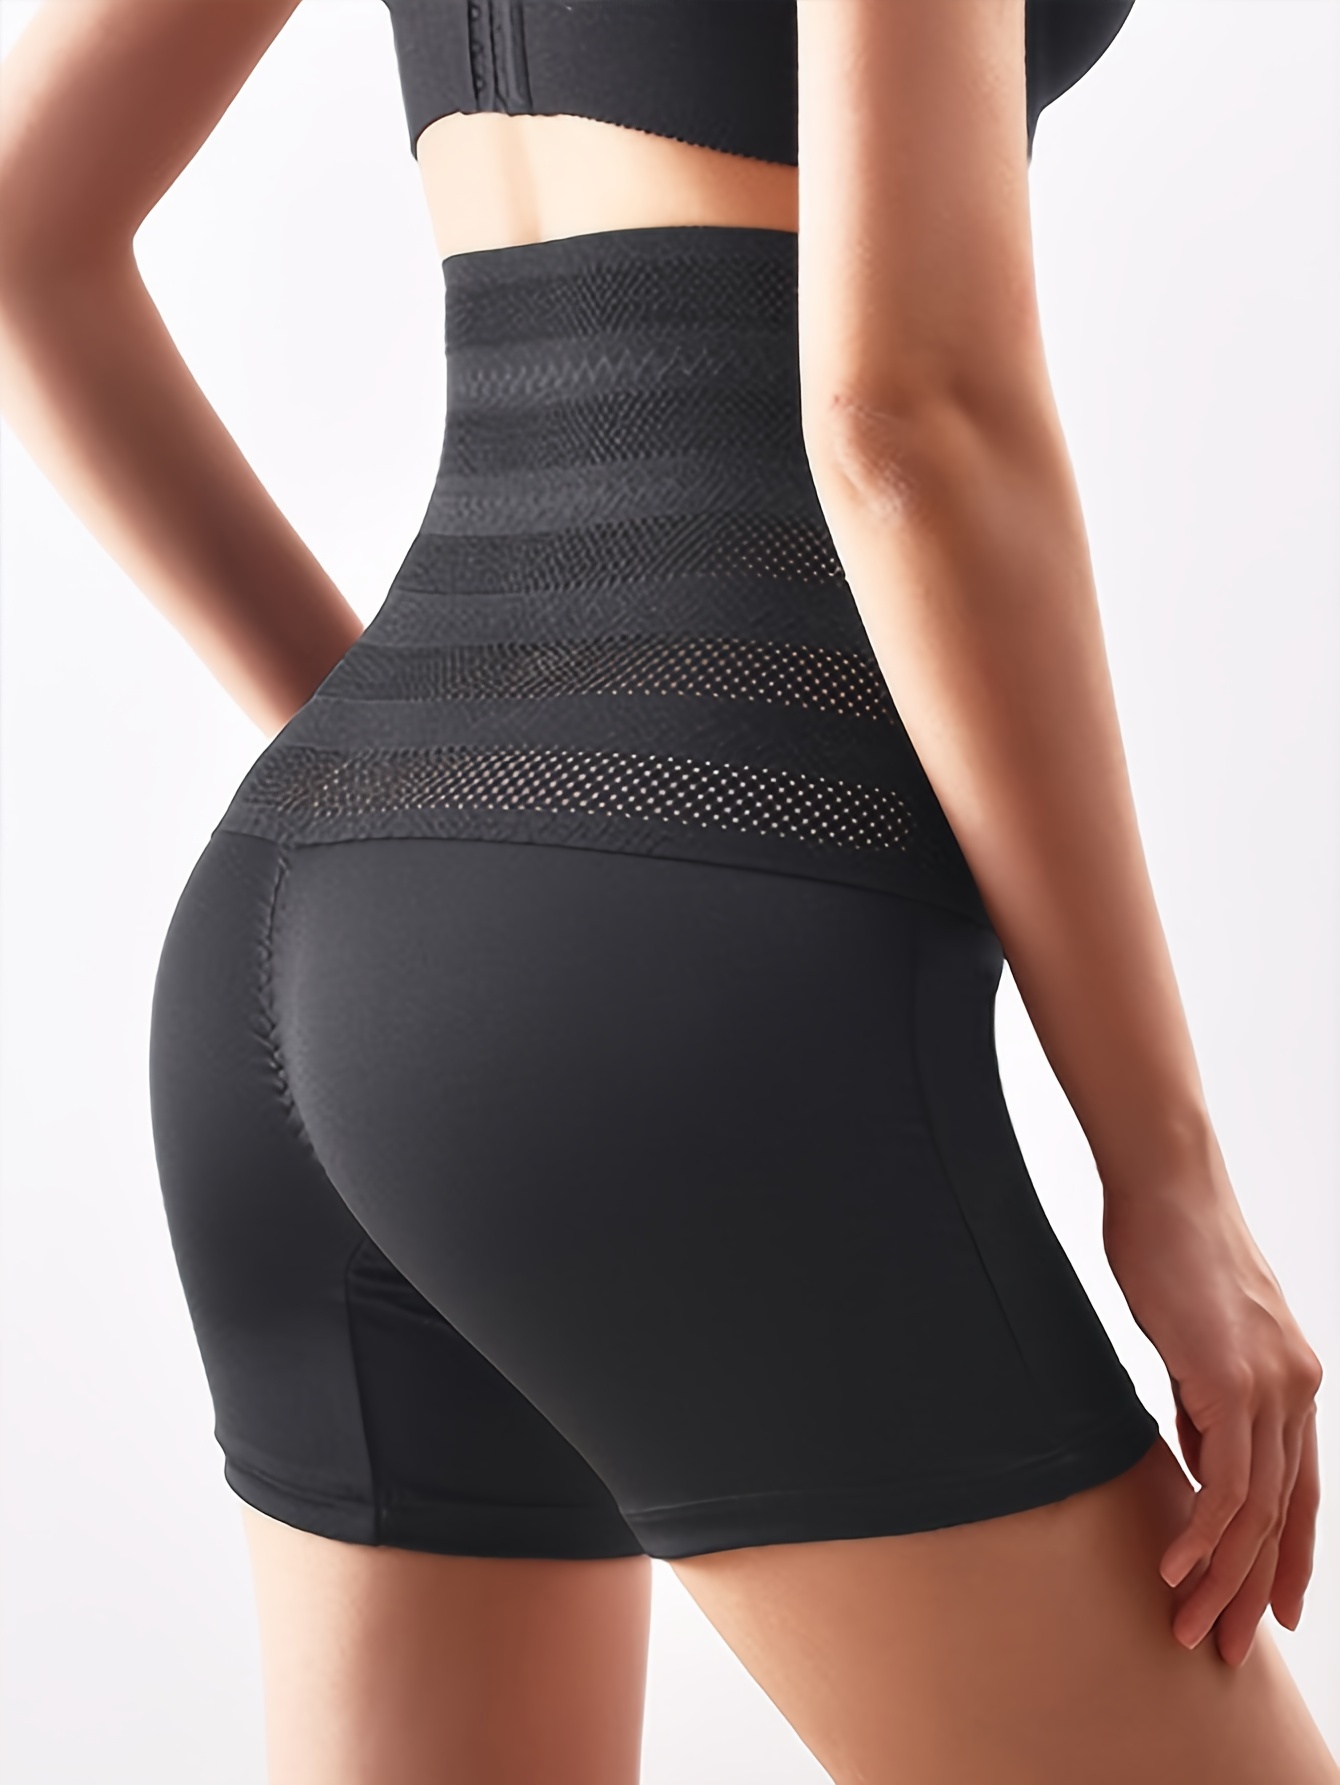 Women Body Shaping Underwear High Waist Butt Lift Panties Tight